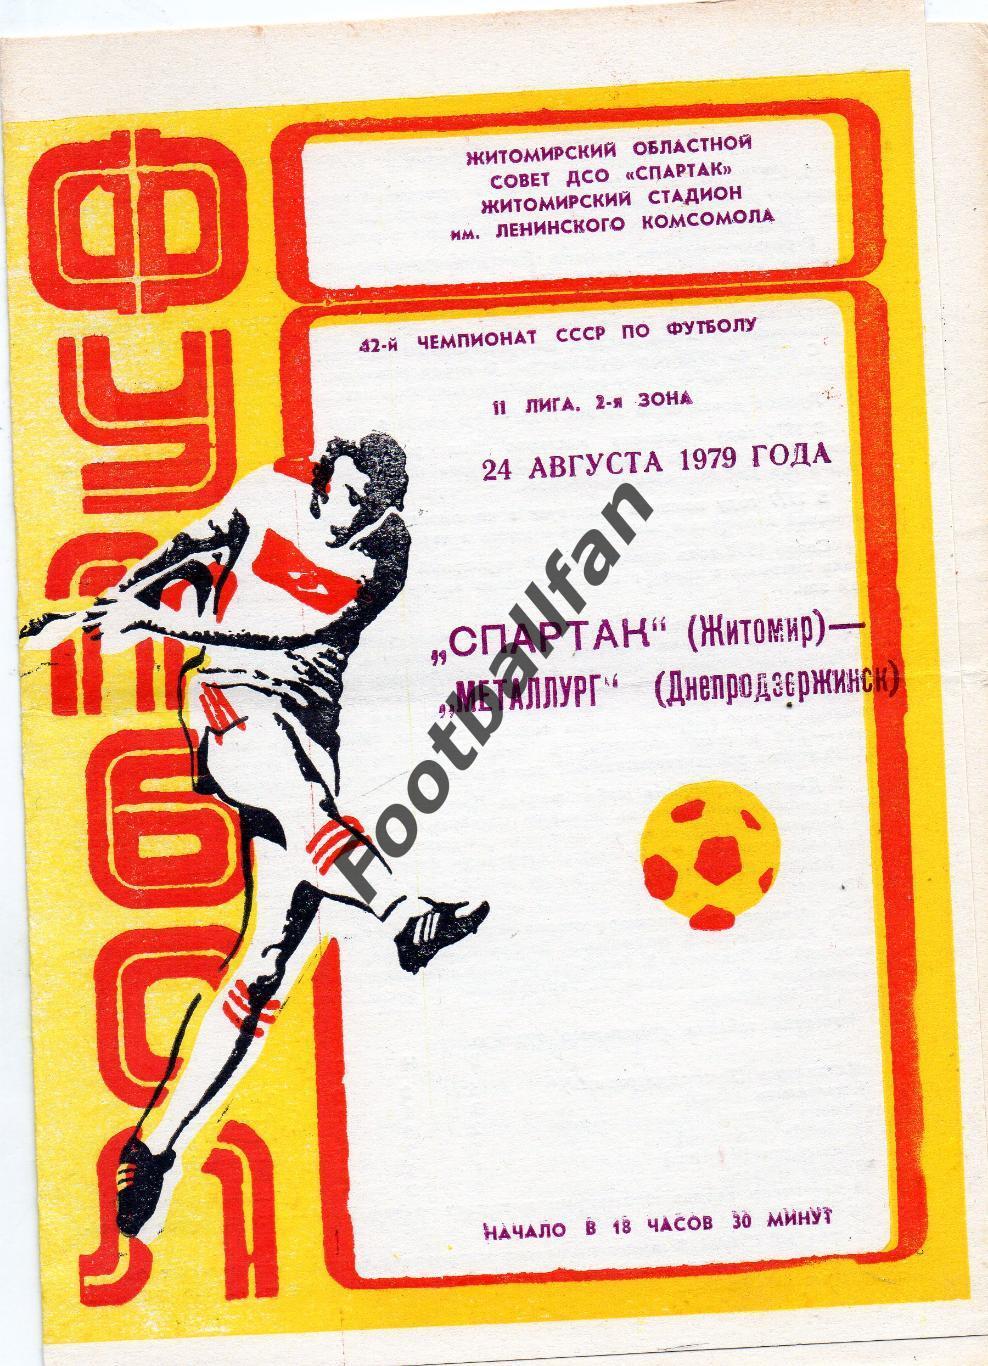 Спартак Житомир - Металлург Днепродзержинск 24.08.1979